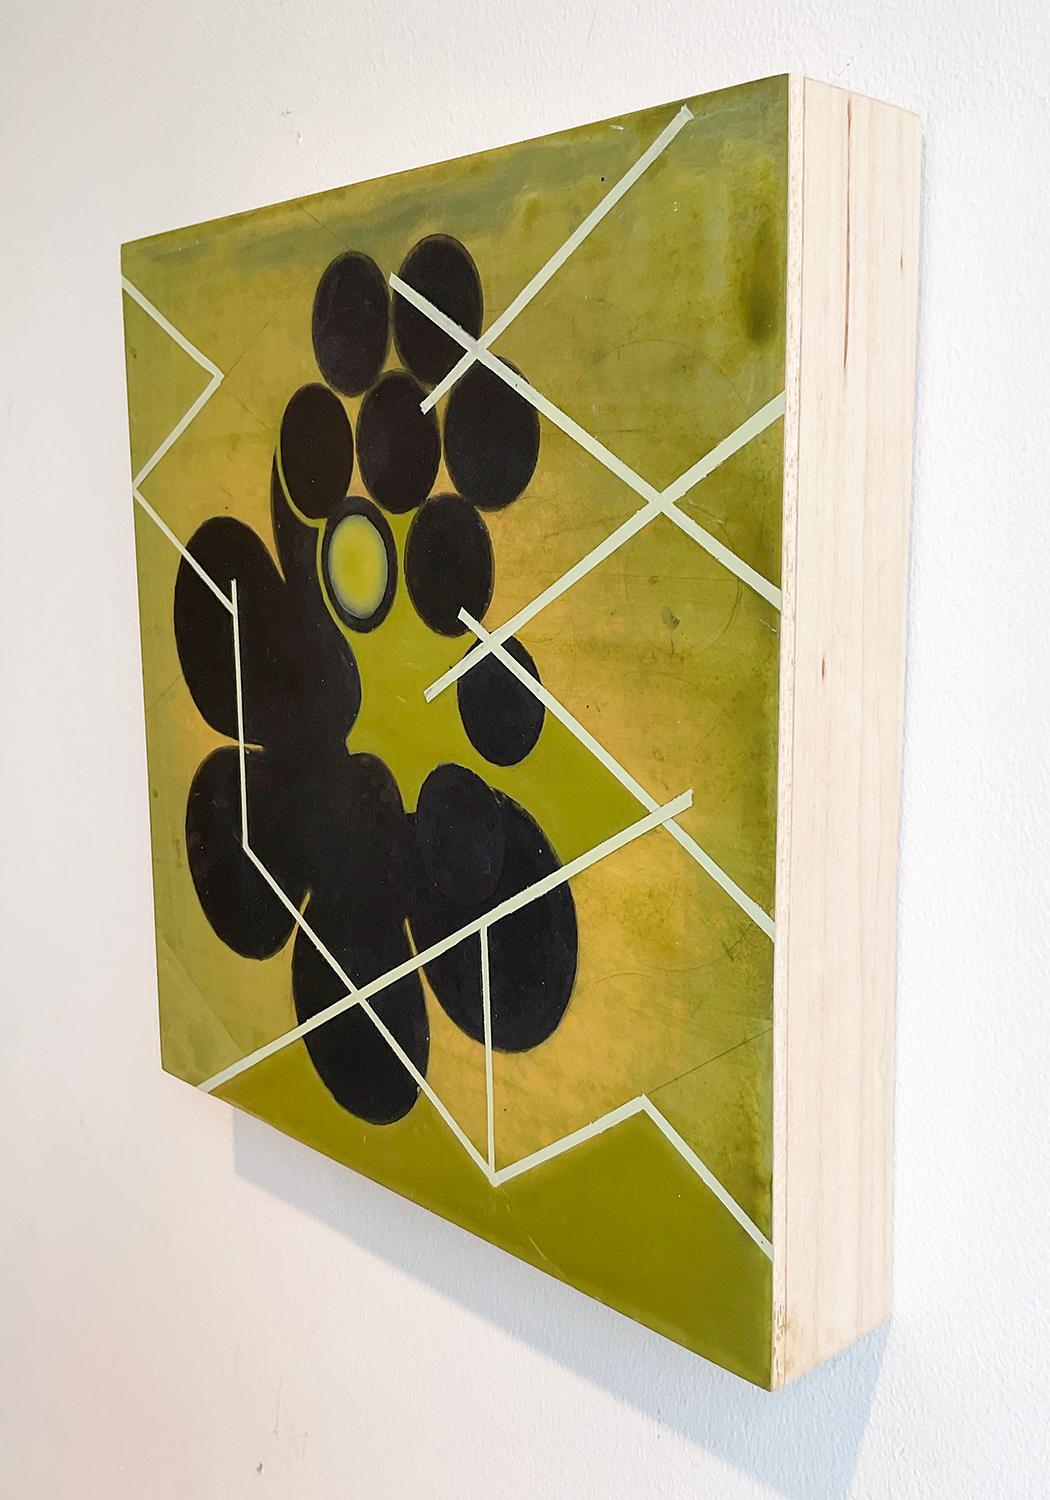 Peinture géométrique abstraite contemporaine sur panneau de bois de 12 x 12 pouces avec des cercles noirs et des éléments linéaires blancs sur un fond vert.
Mère verte #2, 2020, par Jeanette Fintz
12 x 12 x 2 pouces, acrylique sur panneau de